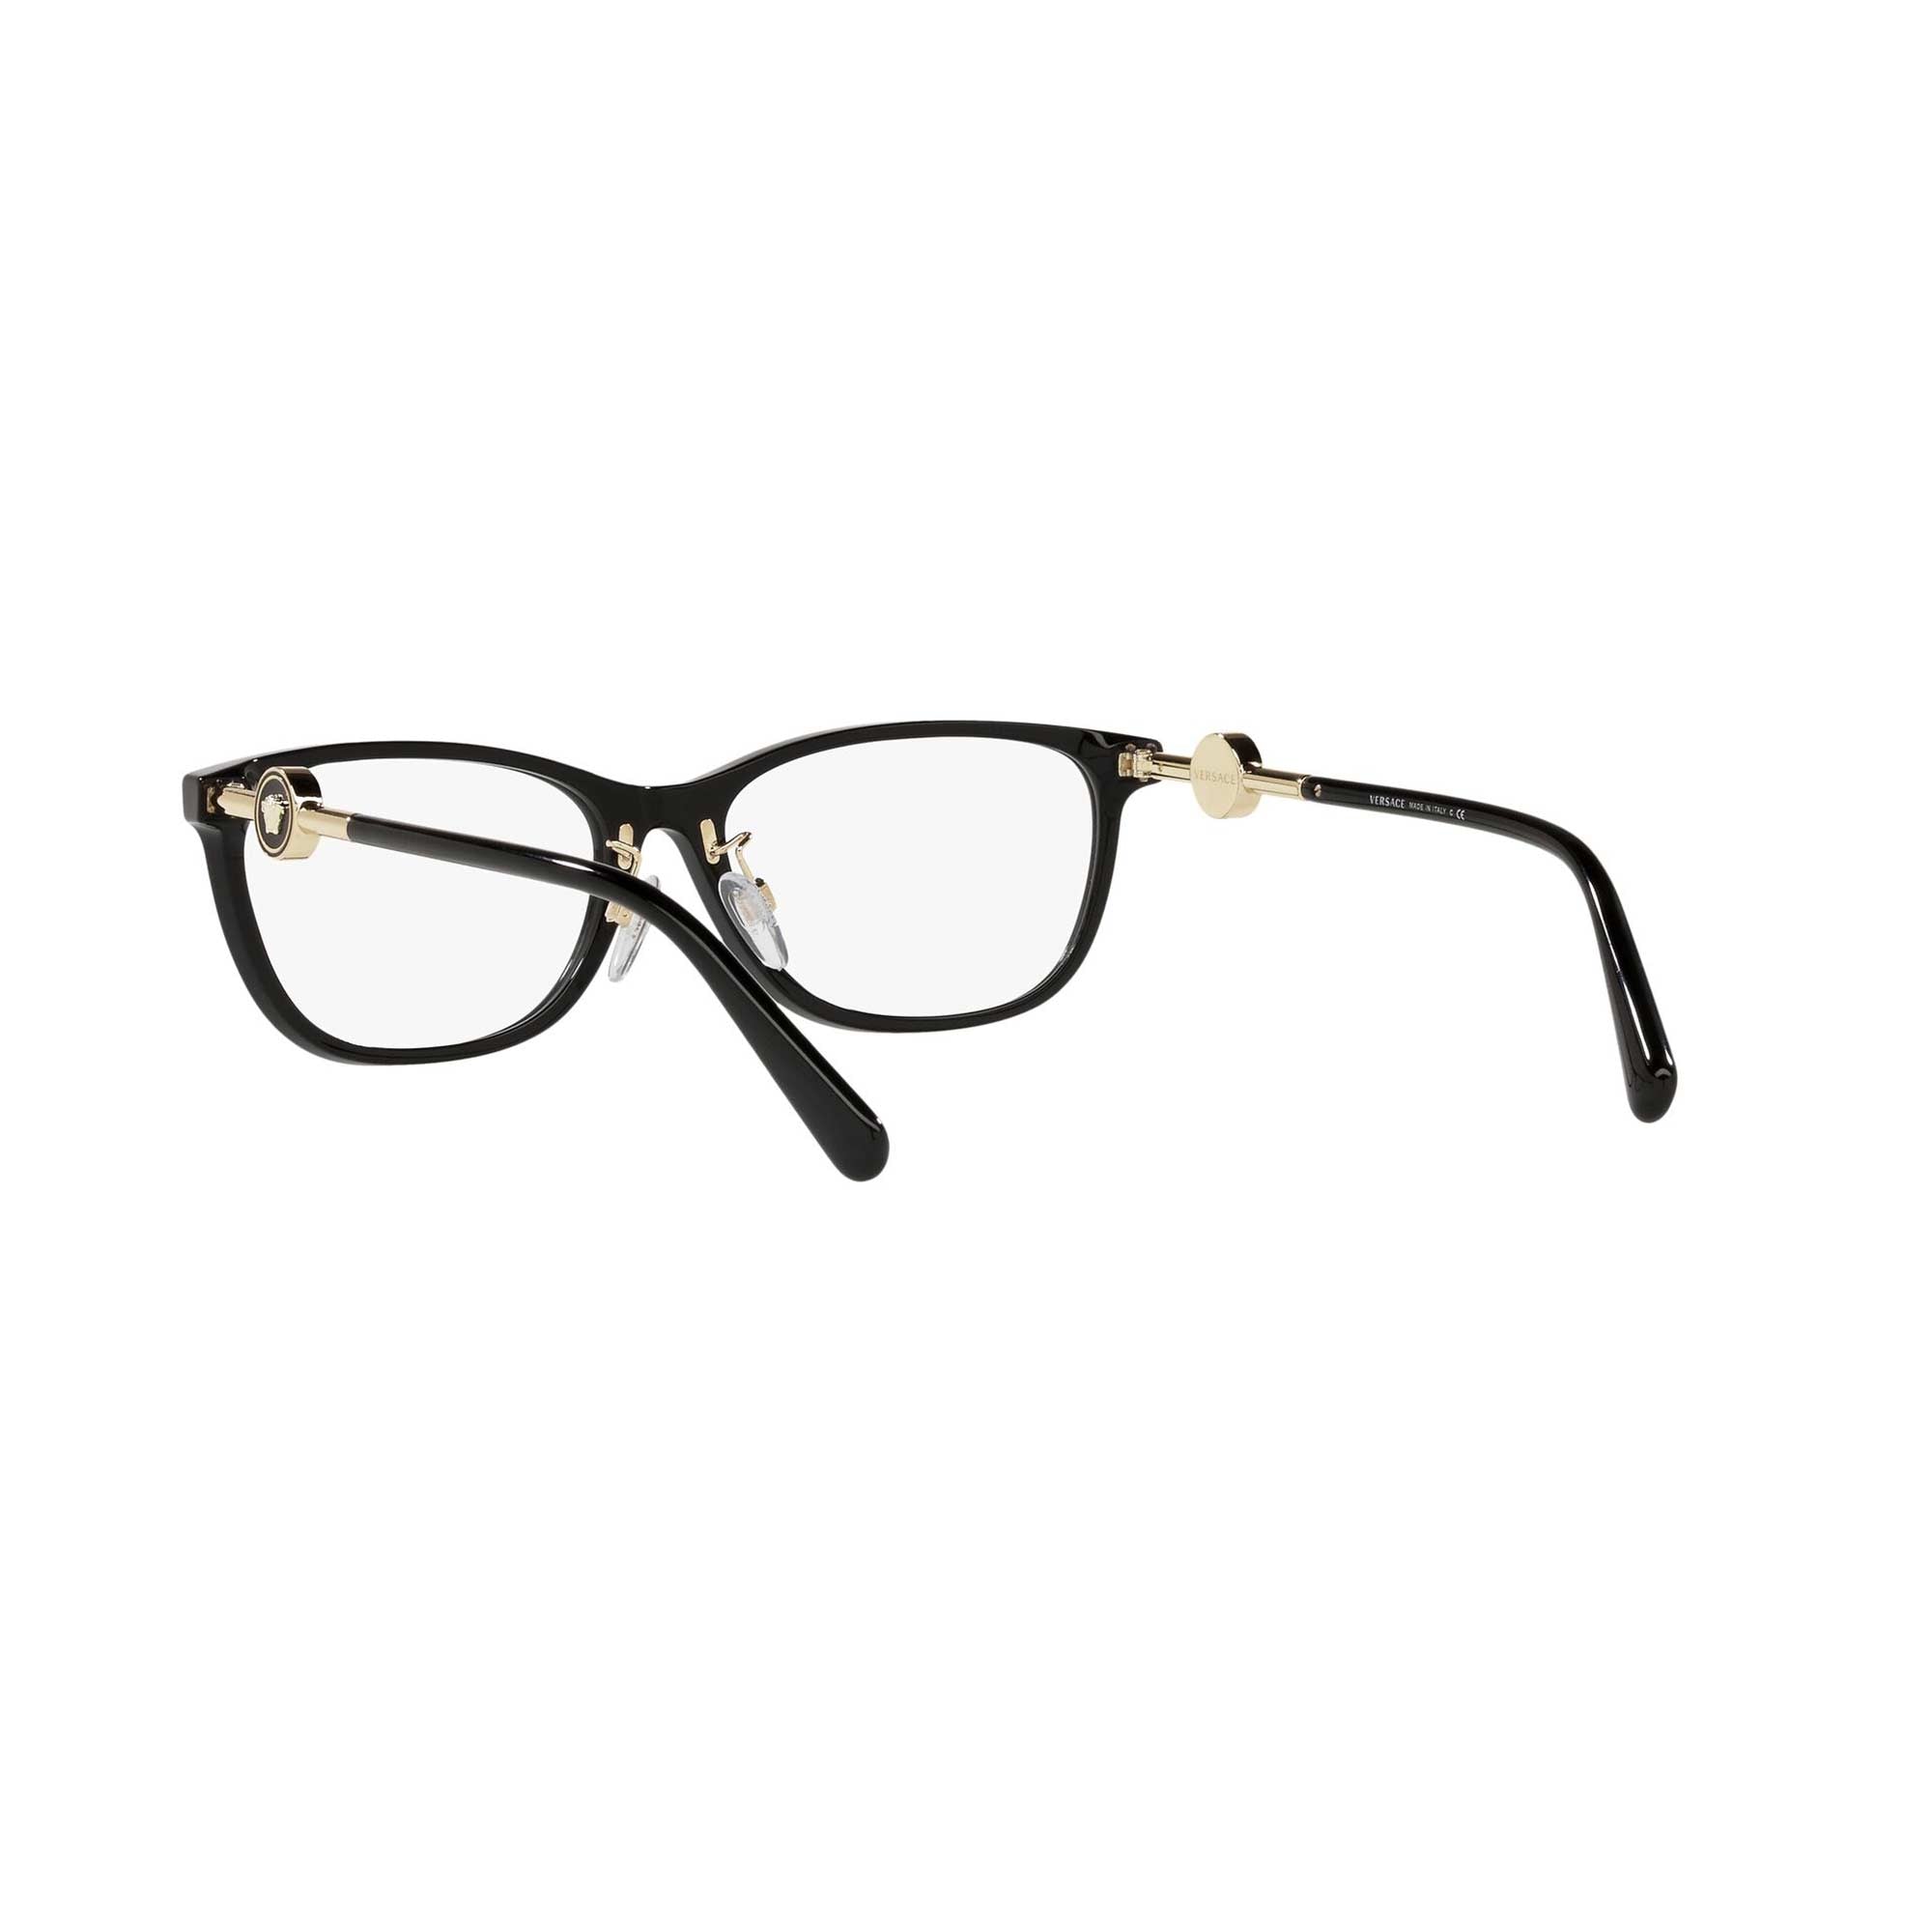 Versace Prescription Glasses VE3342 Black/Clear Glasses | Prescription  glasses, Versace glasses, Italian luxury brands